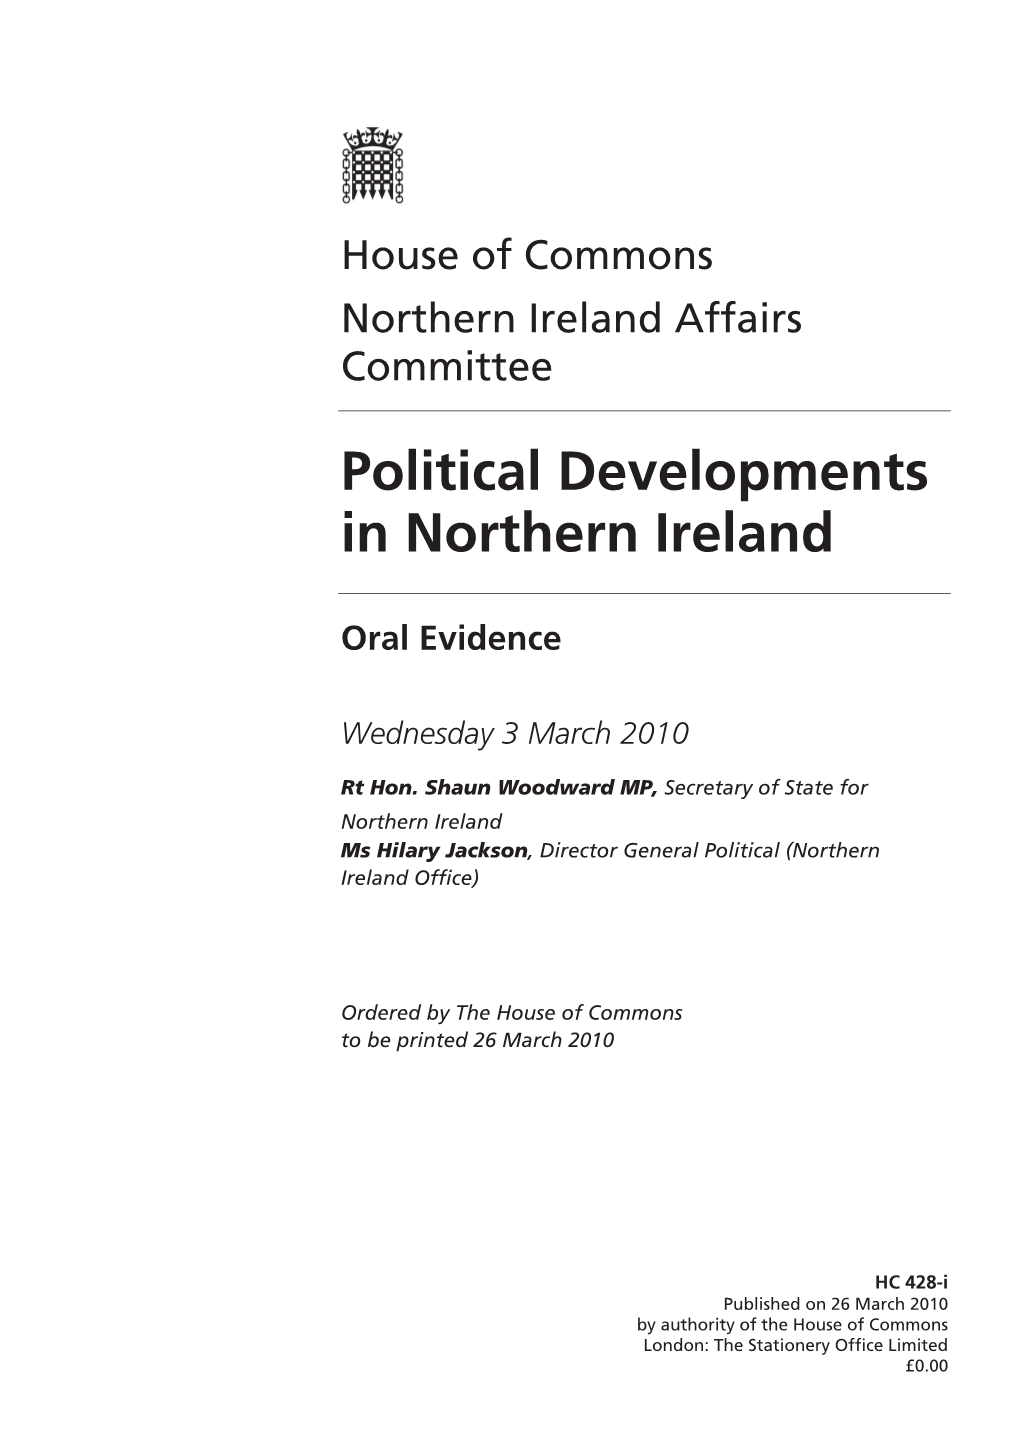 Political Developments in Northern Ireland